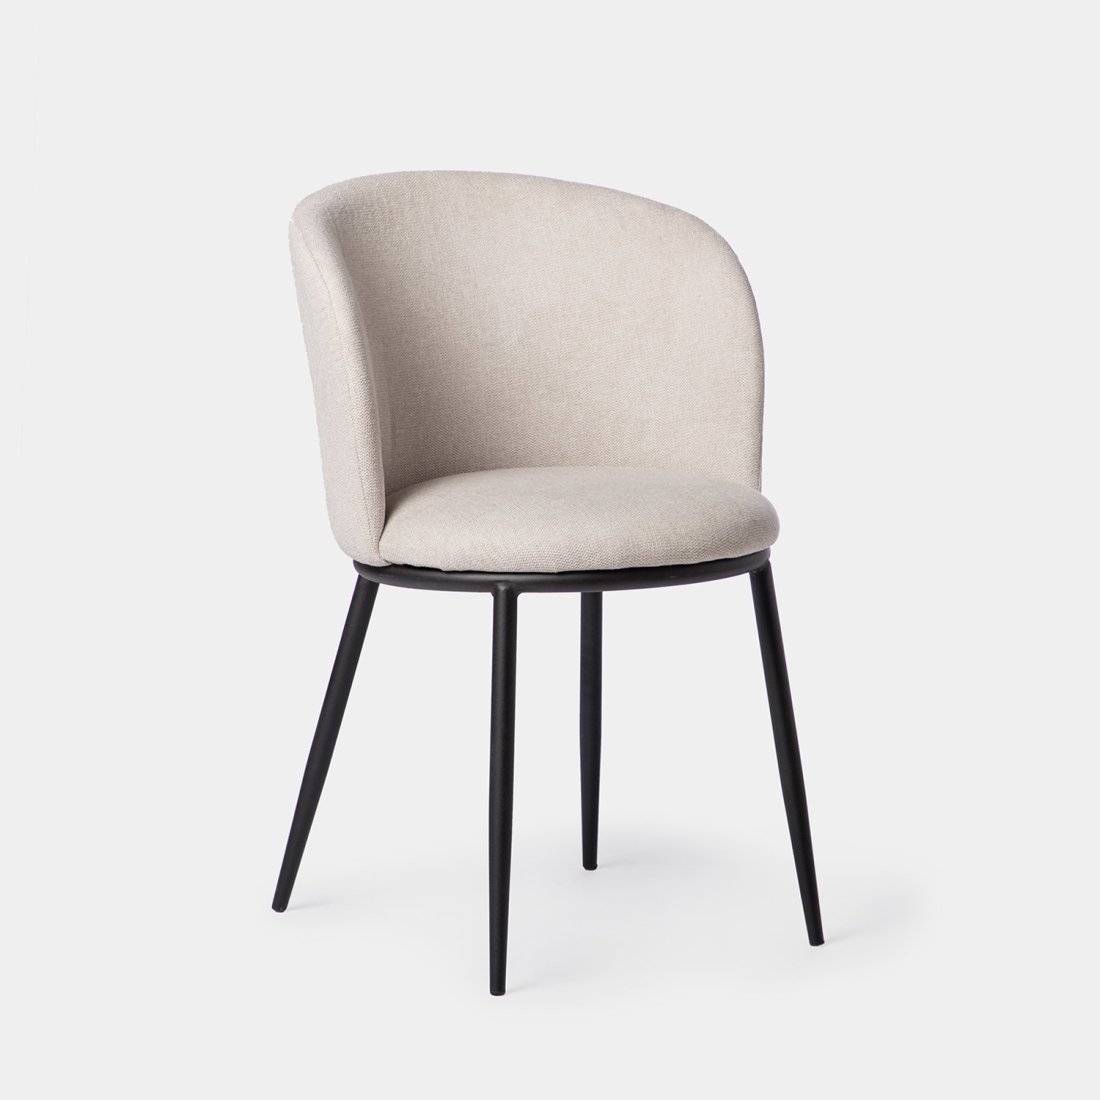 La silla de comedor Nolan tapizada en beige con pata metálica negra es la pieza ideal para completar la decoración de tu hogar. Su respaldo curvado envuelve a la perfección la espalda y aporta una gran sensación de confort y comodidad. Está disponible en una amplia gama de tonos